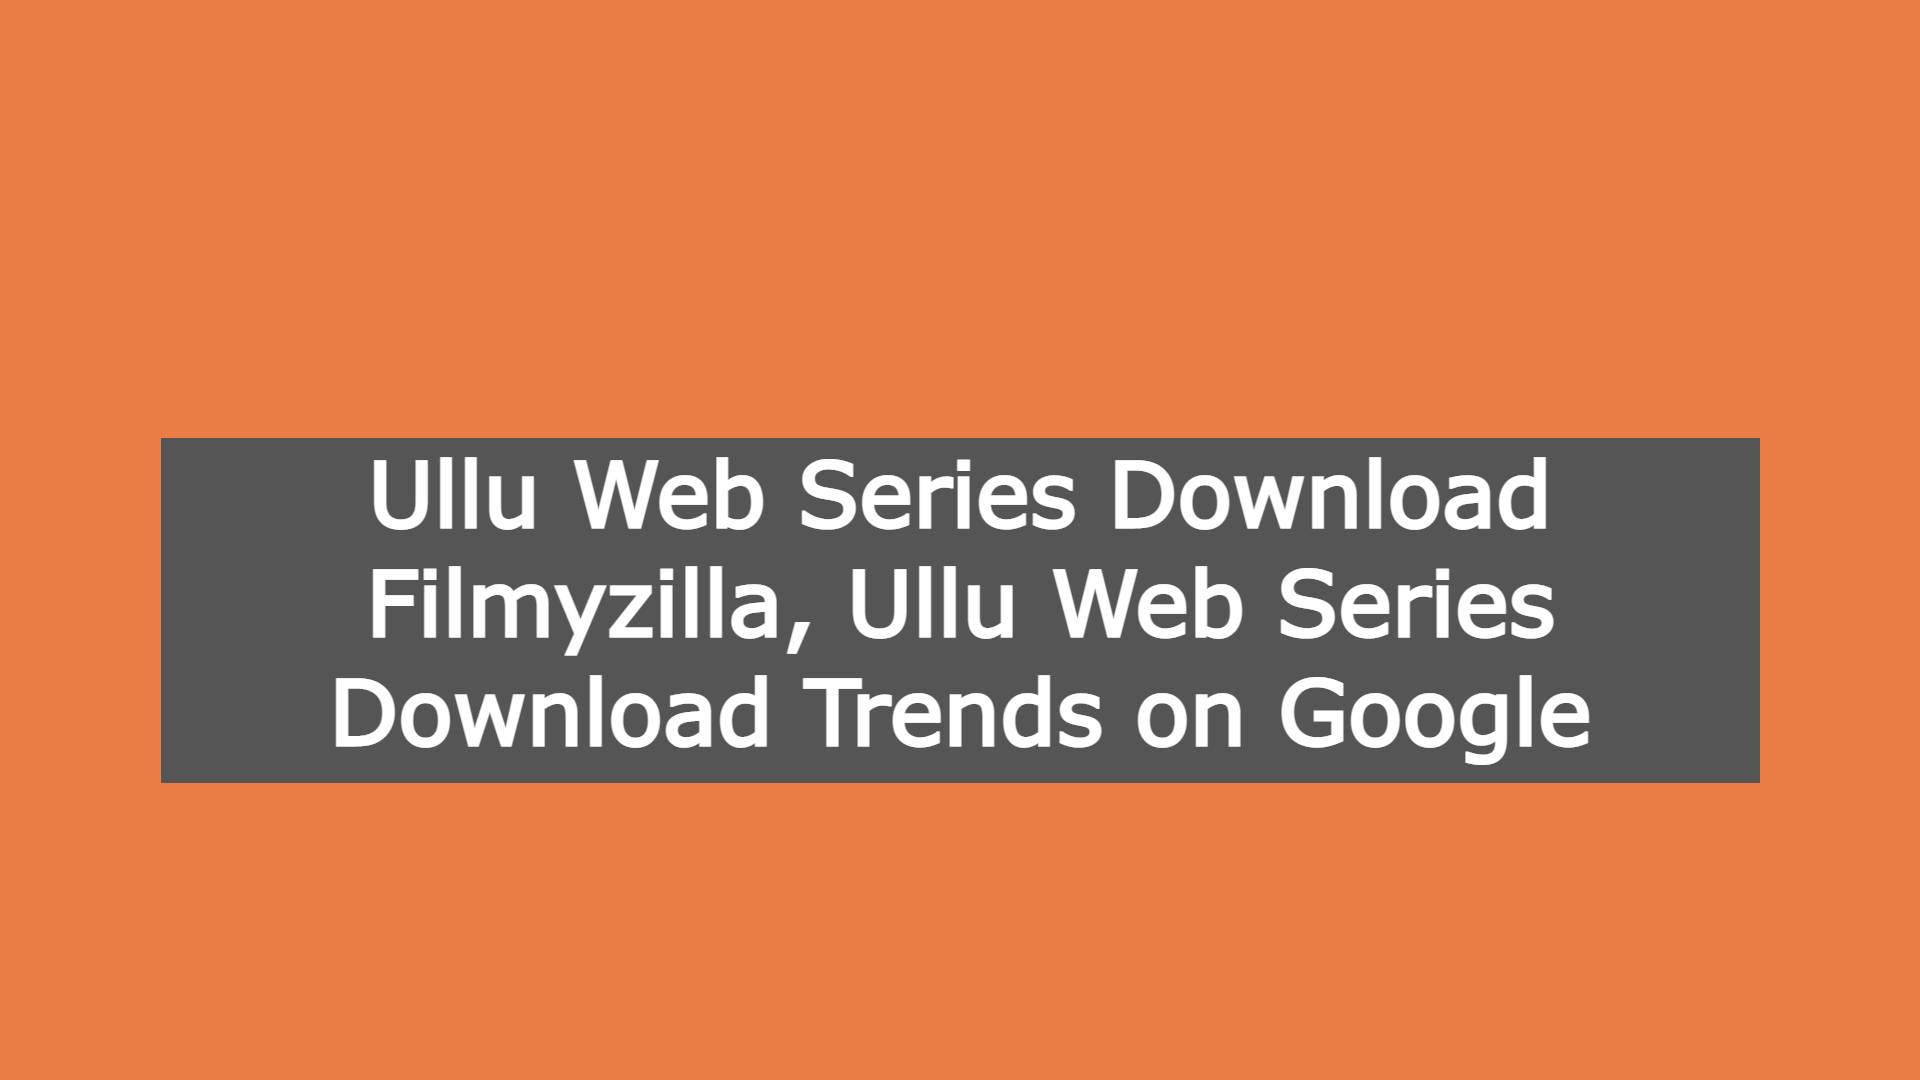 Ullu Web Series Download Filmyzilla, Ullu Web Series Download Trends on Google